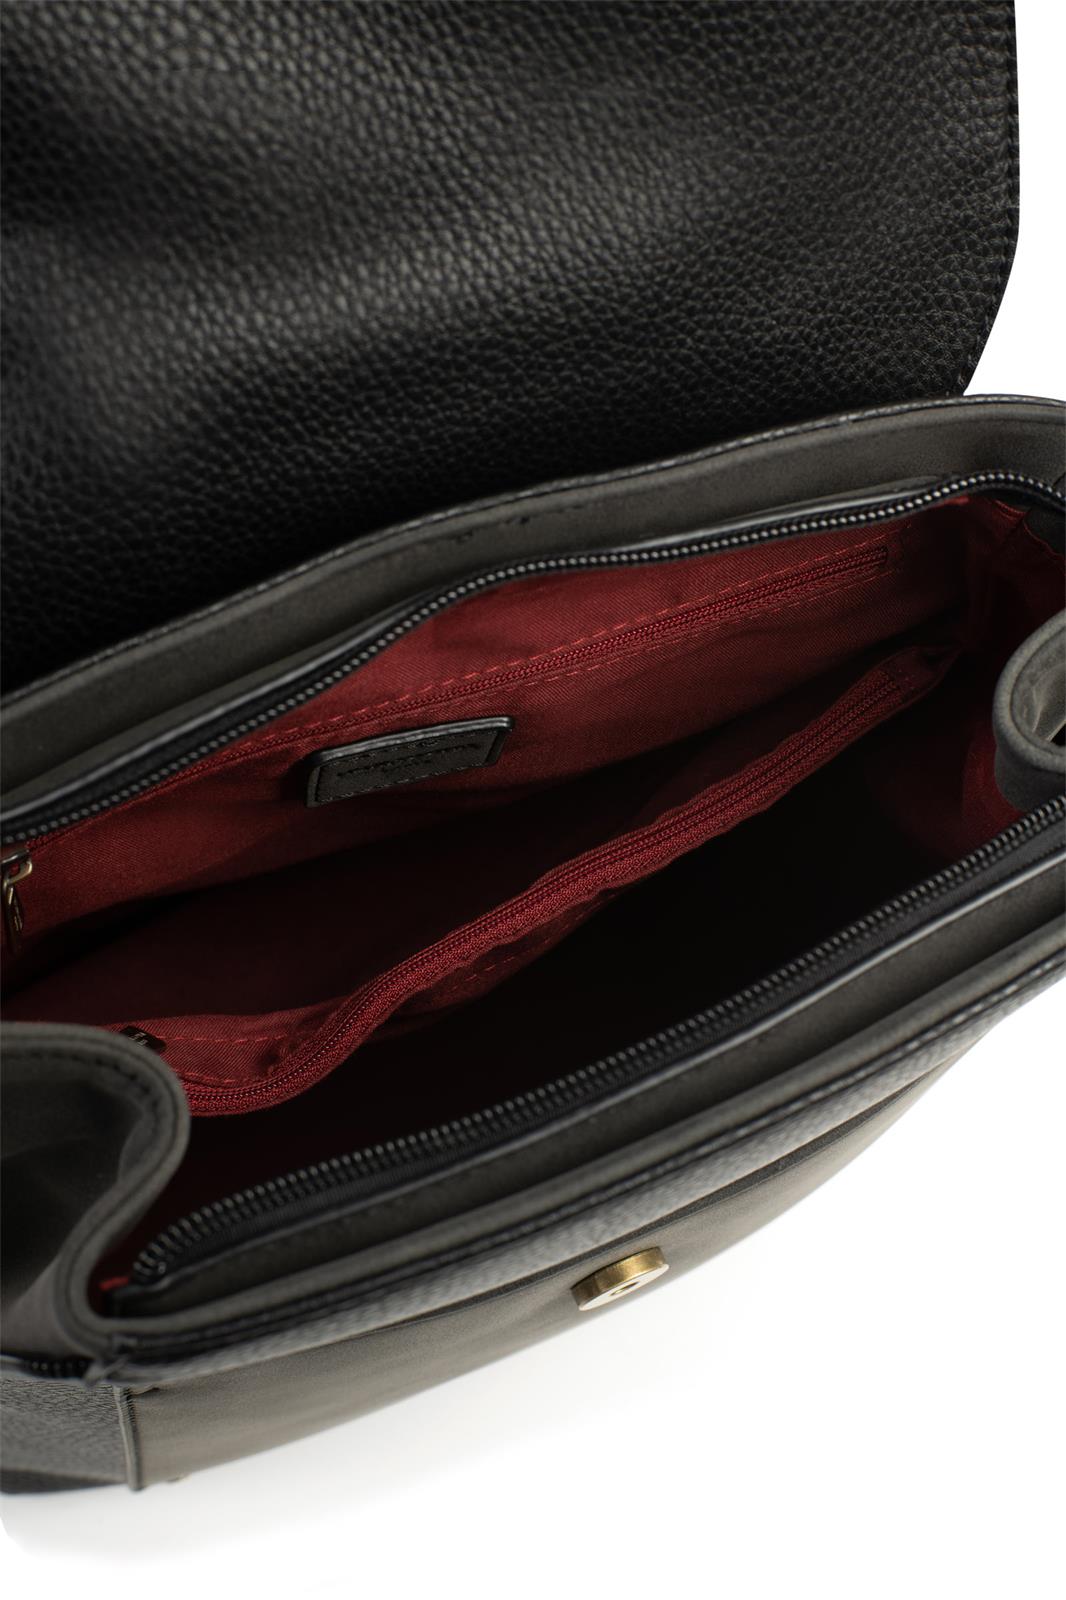 Damenrucksack - Laure Bags and Travel